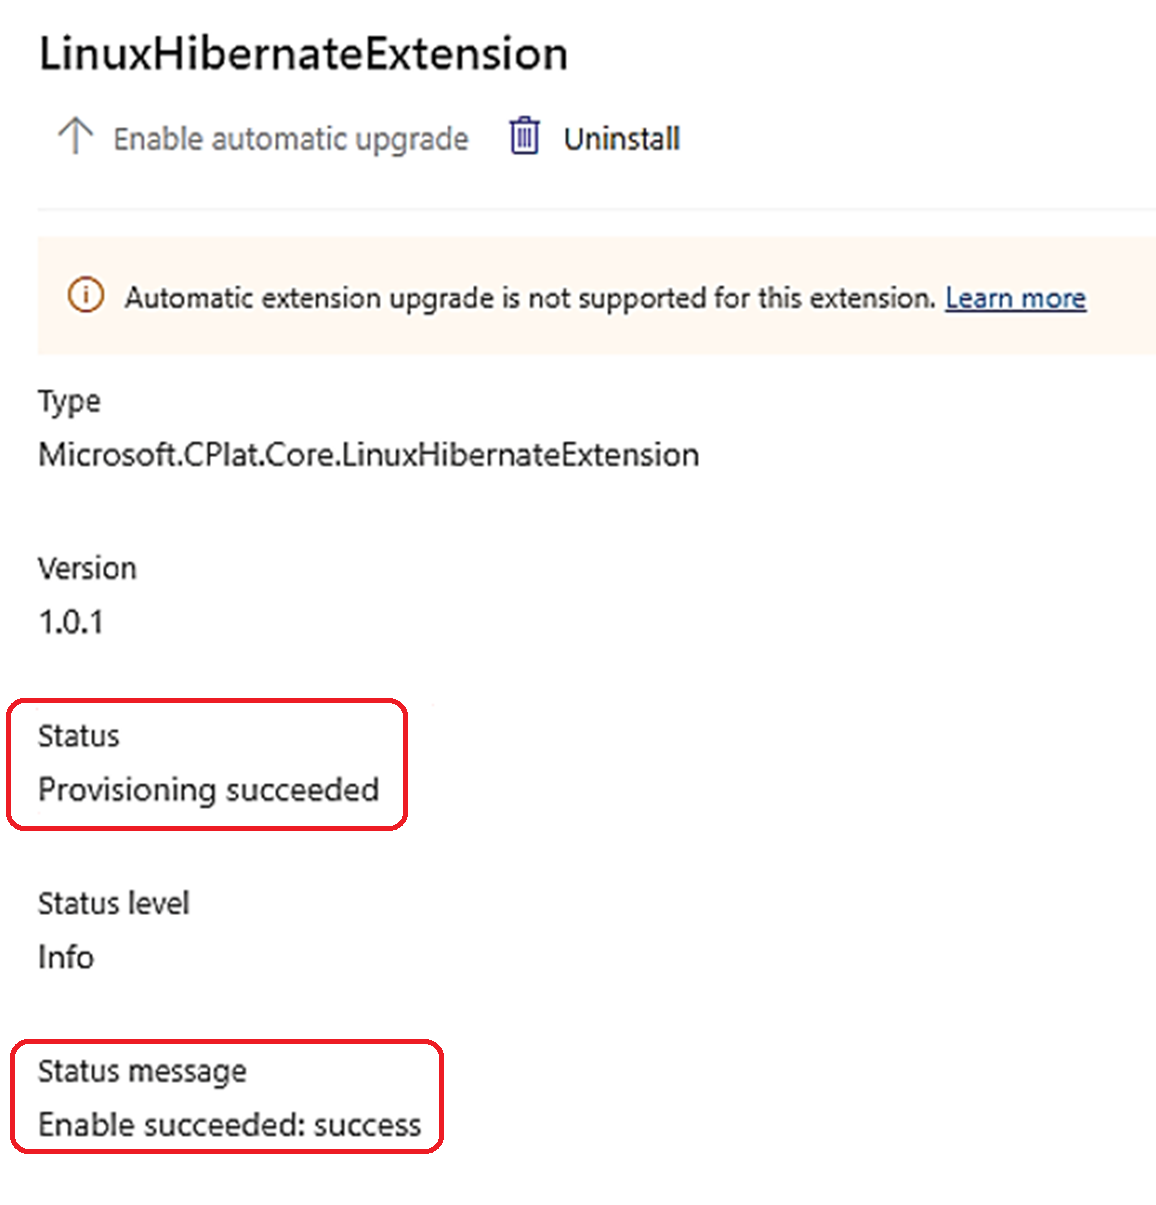 Captura de pantalla del estado y mensaje de estado informando de que el aprovisionamiento se ha realizado correctamente para una máquina virtual Linux.